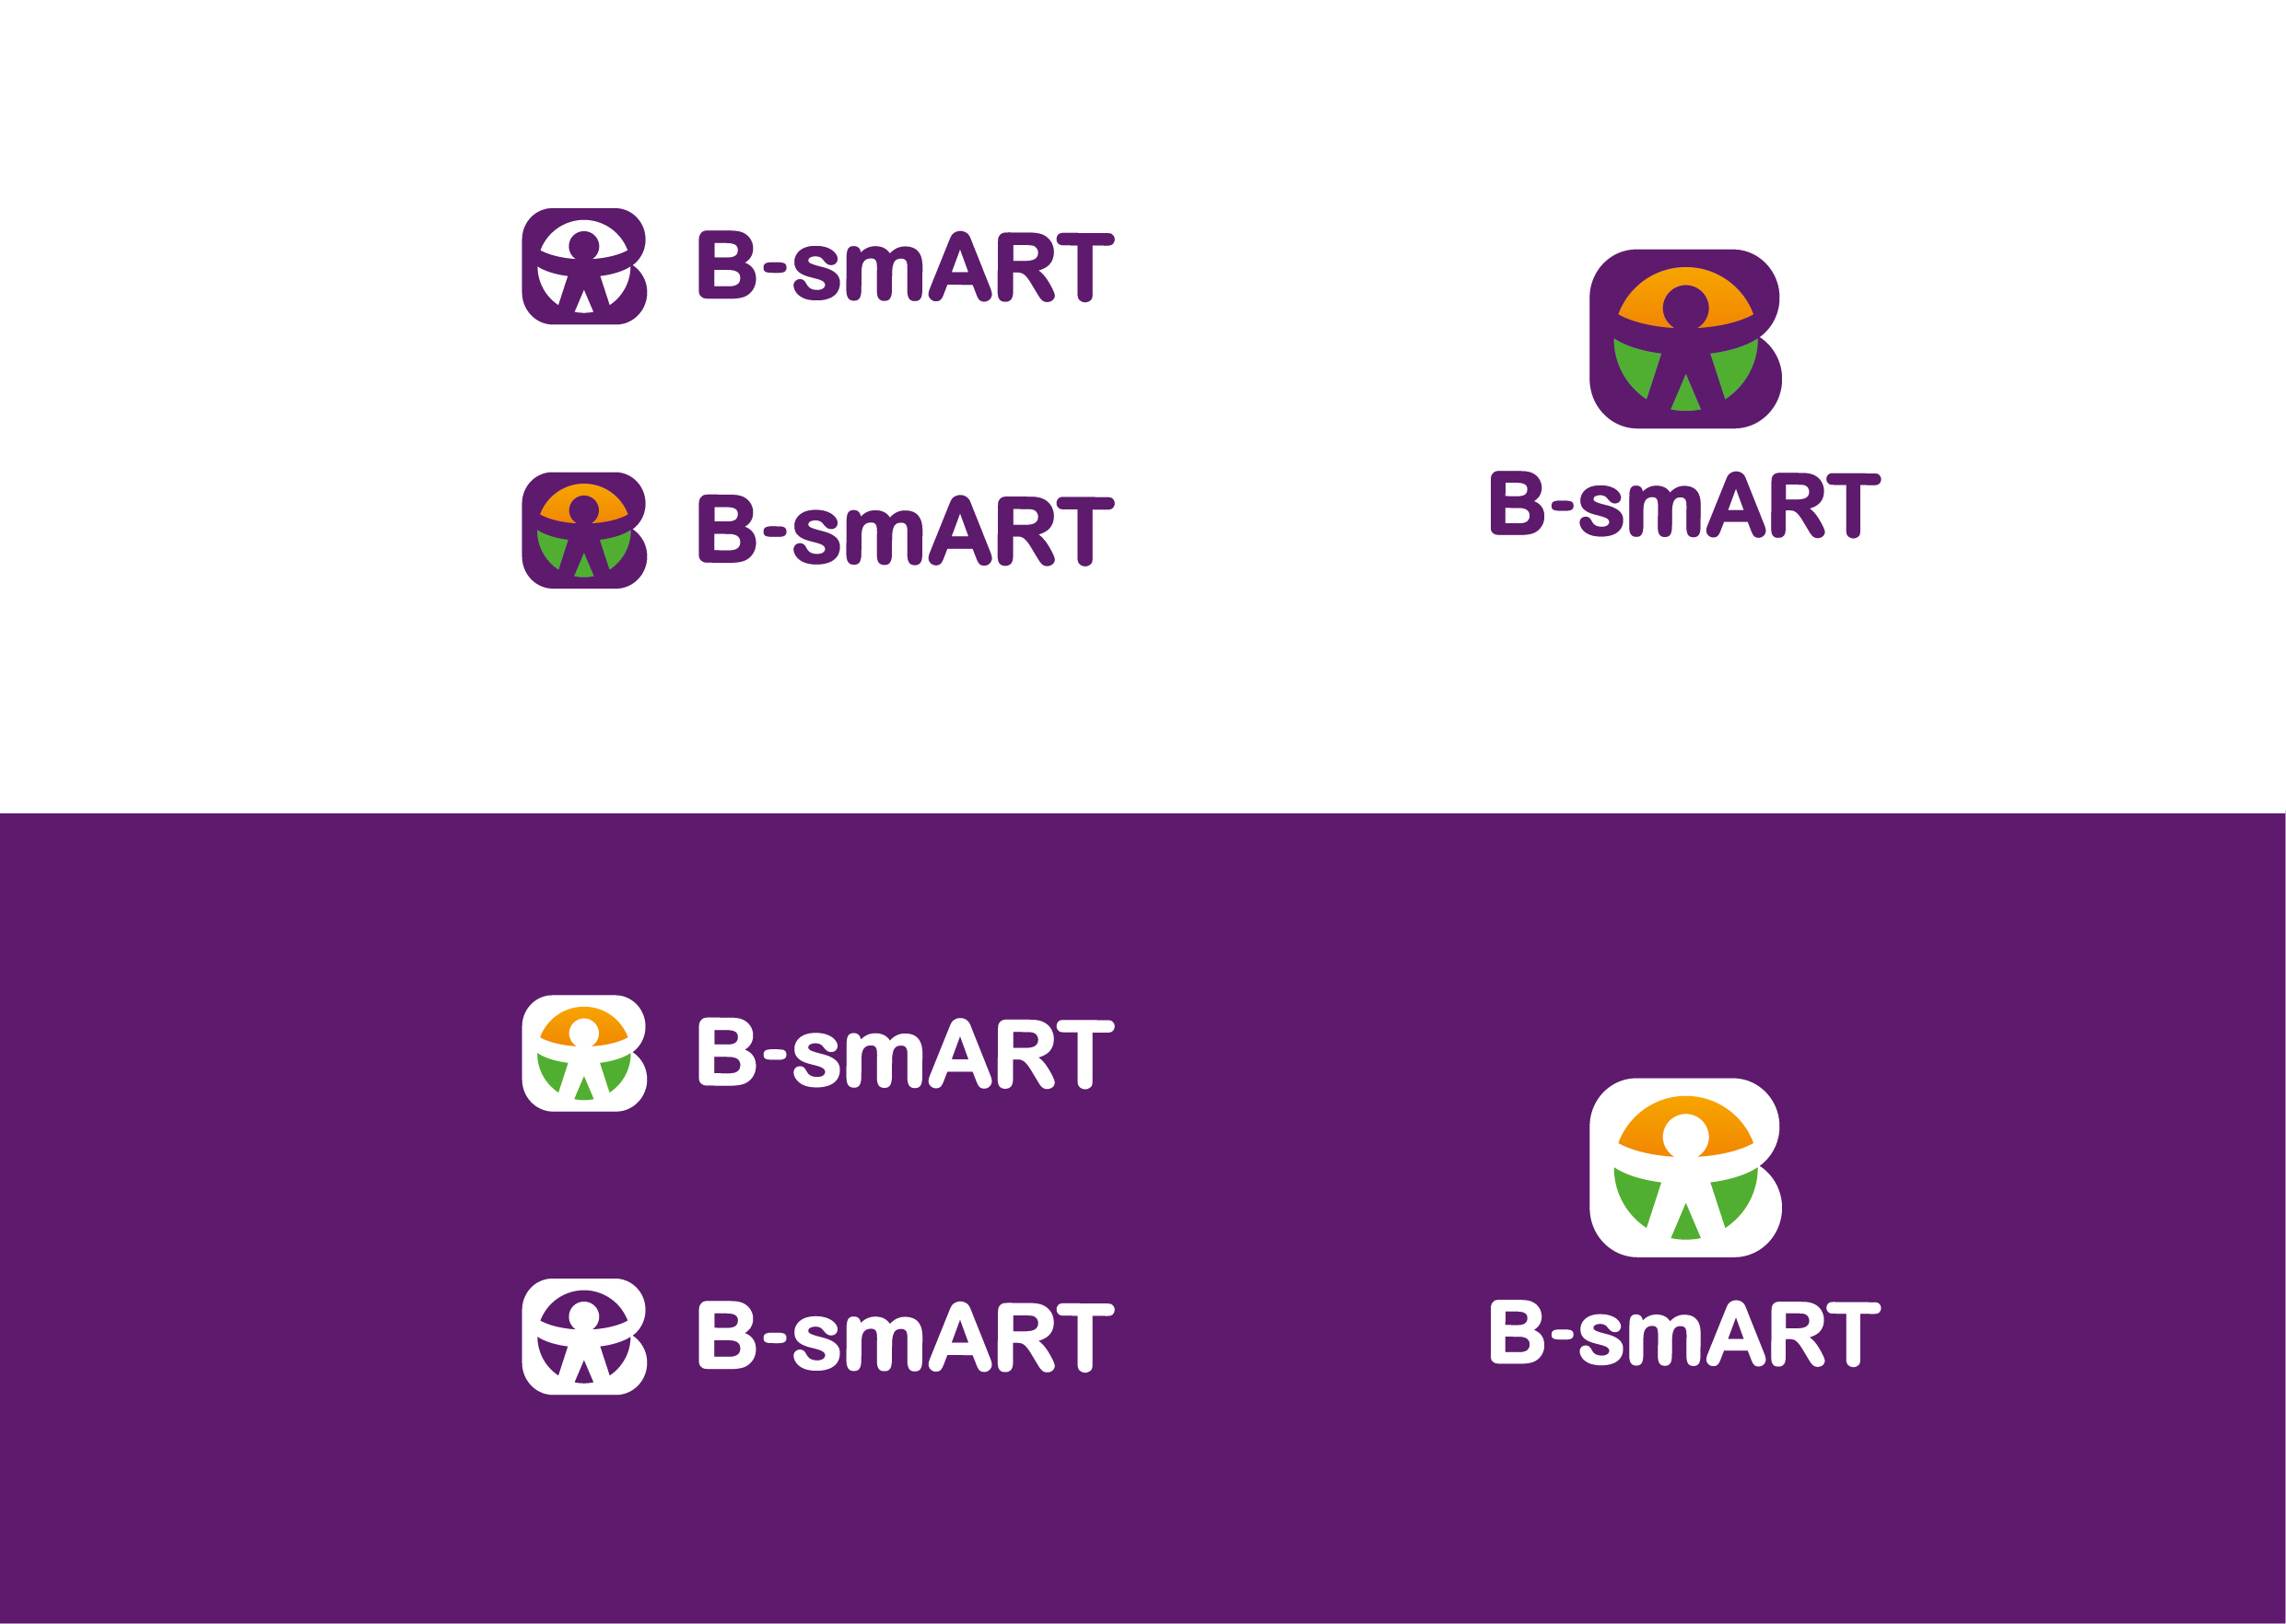 B-smART_1.jpg